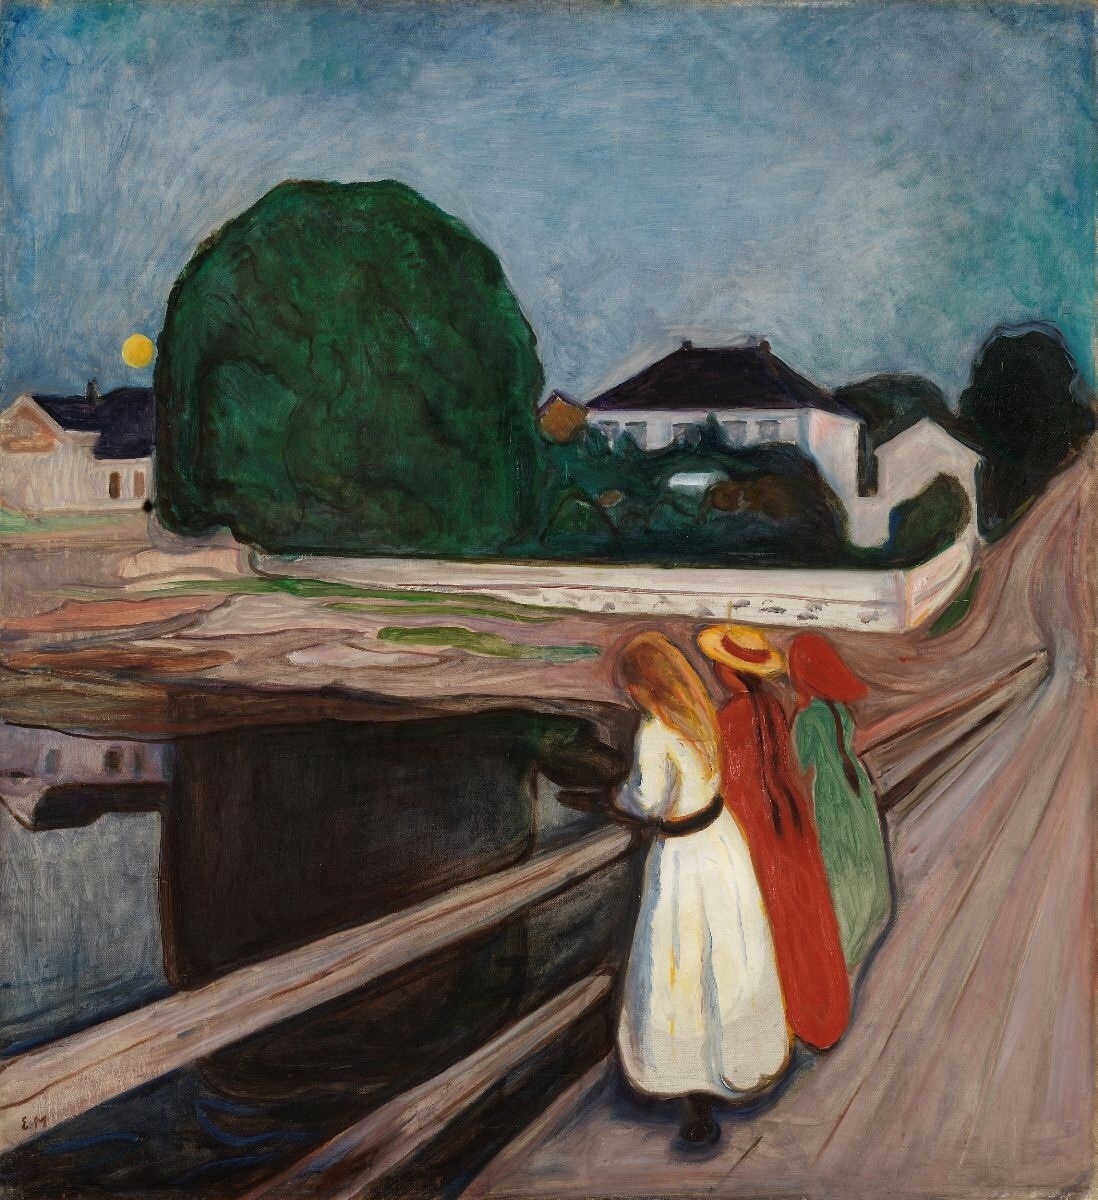 Pictată în 1902 în culori vii și înfățișând o scenă în aer liber - spre deosebire de o mare parte din lucrările sale anterioare - mulți consideră această lucrare ca fiind una dintre cele mai mari ale lui Munch, de unde și prețul său ridicat, care o recomandă ca fiind una dintre cele mai scumpe picturi din lume vândute vreodată începând cu 2024.